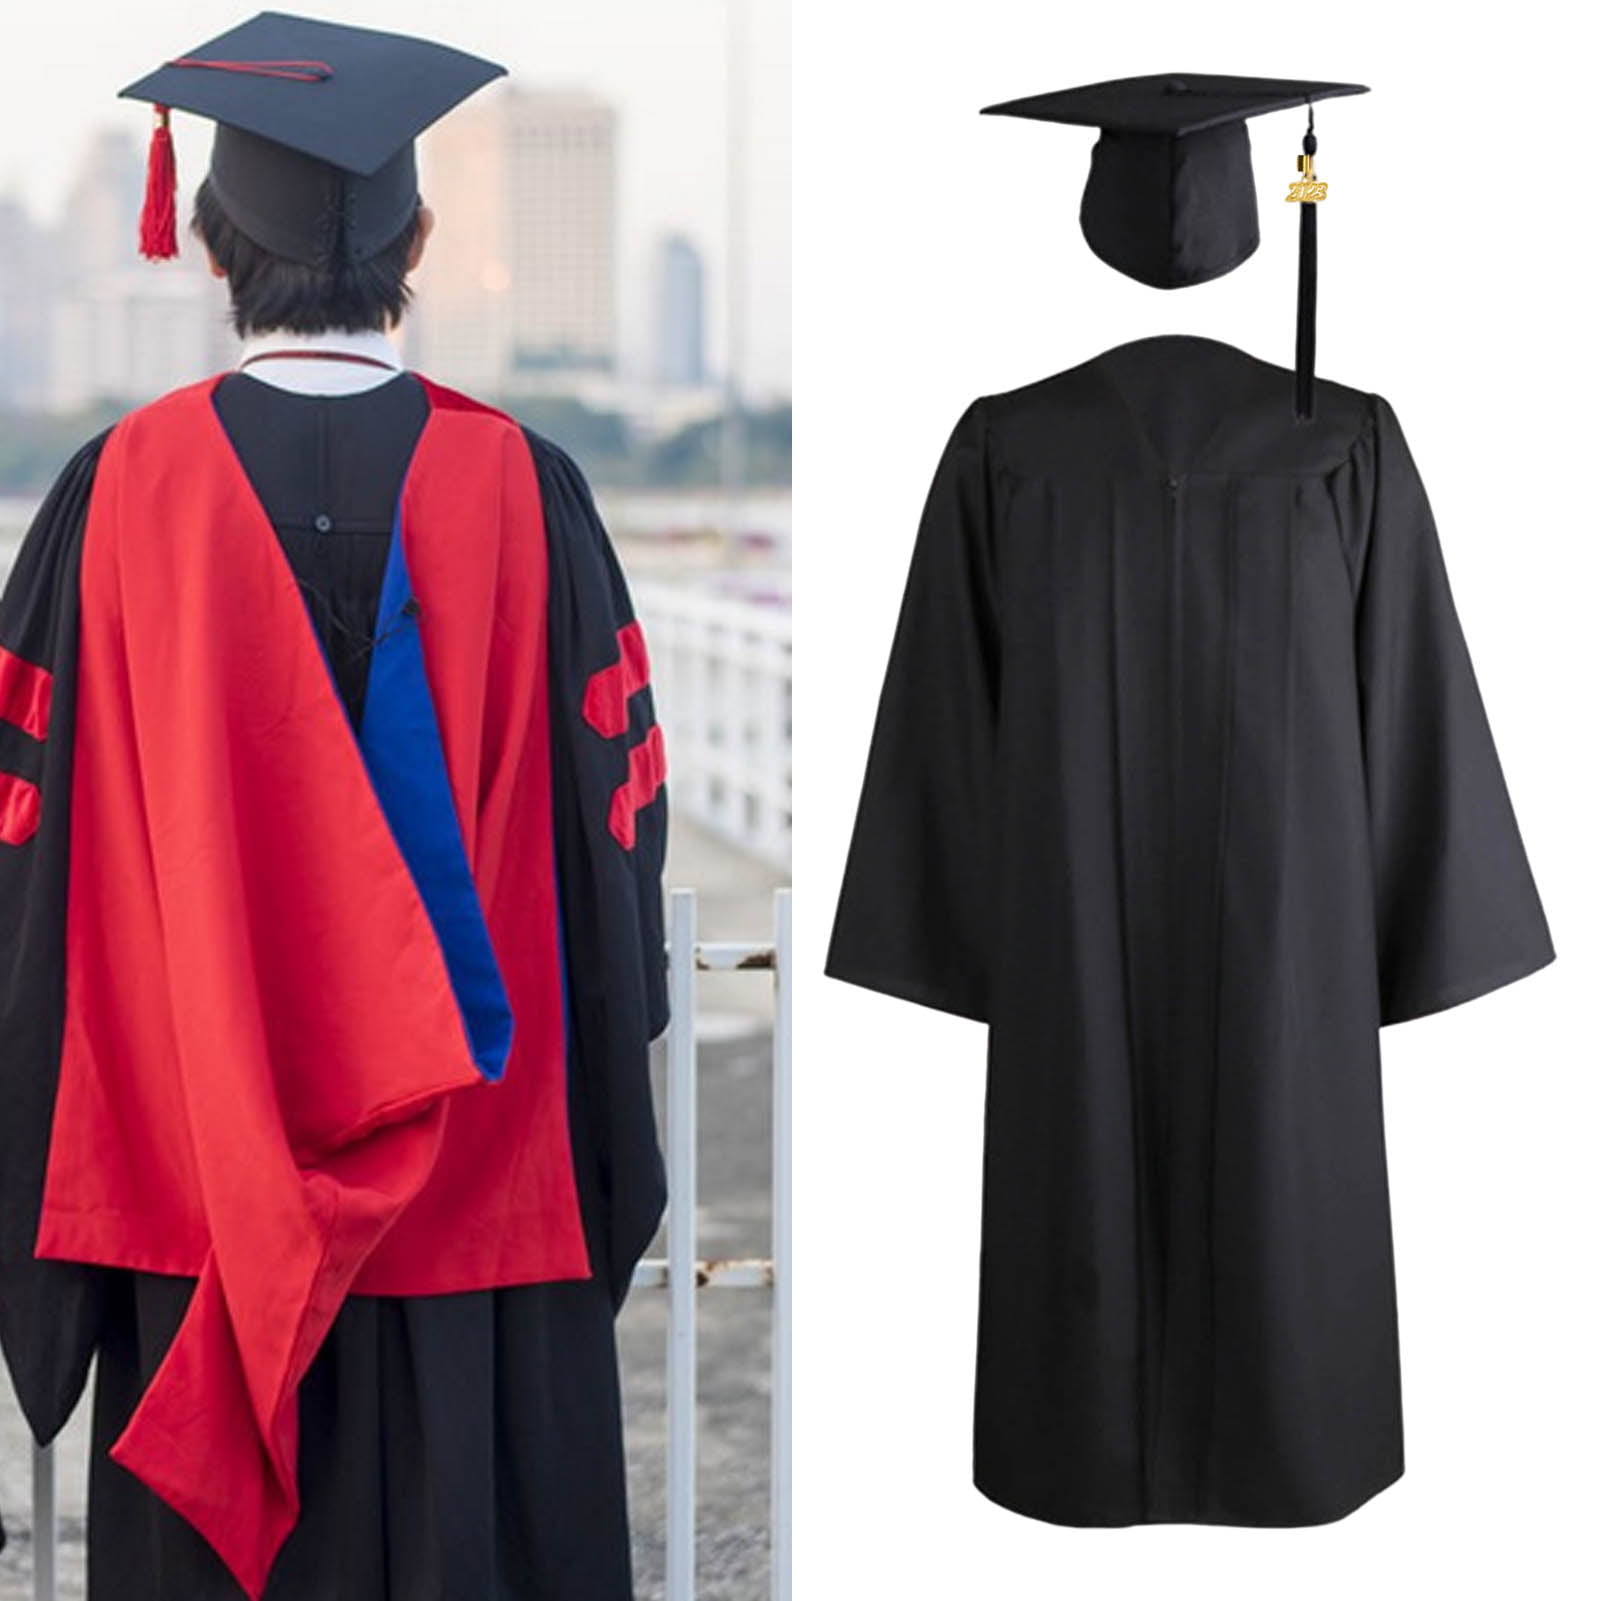 Black Classic Charm AUS Bachelor's: Graduation Gown, Cap, and Tassel -  Graduation Paradise